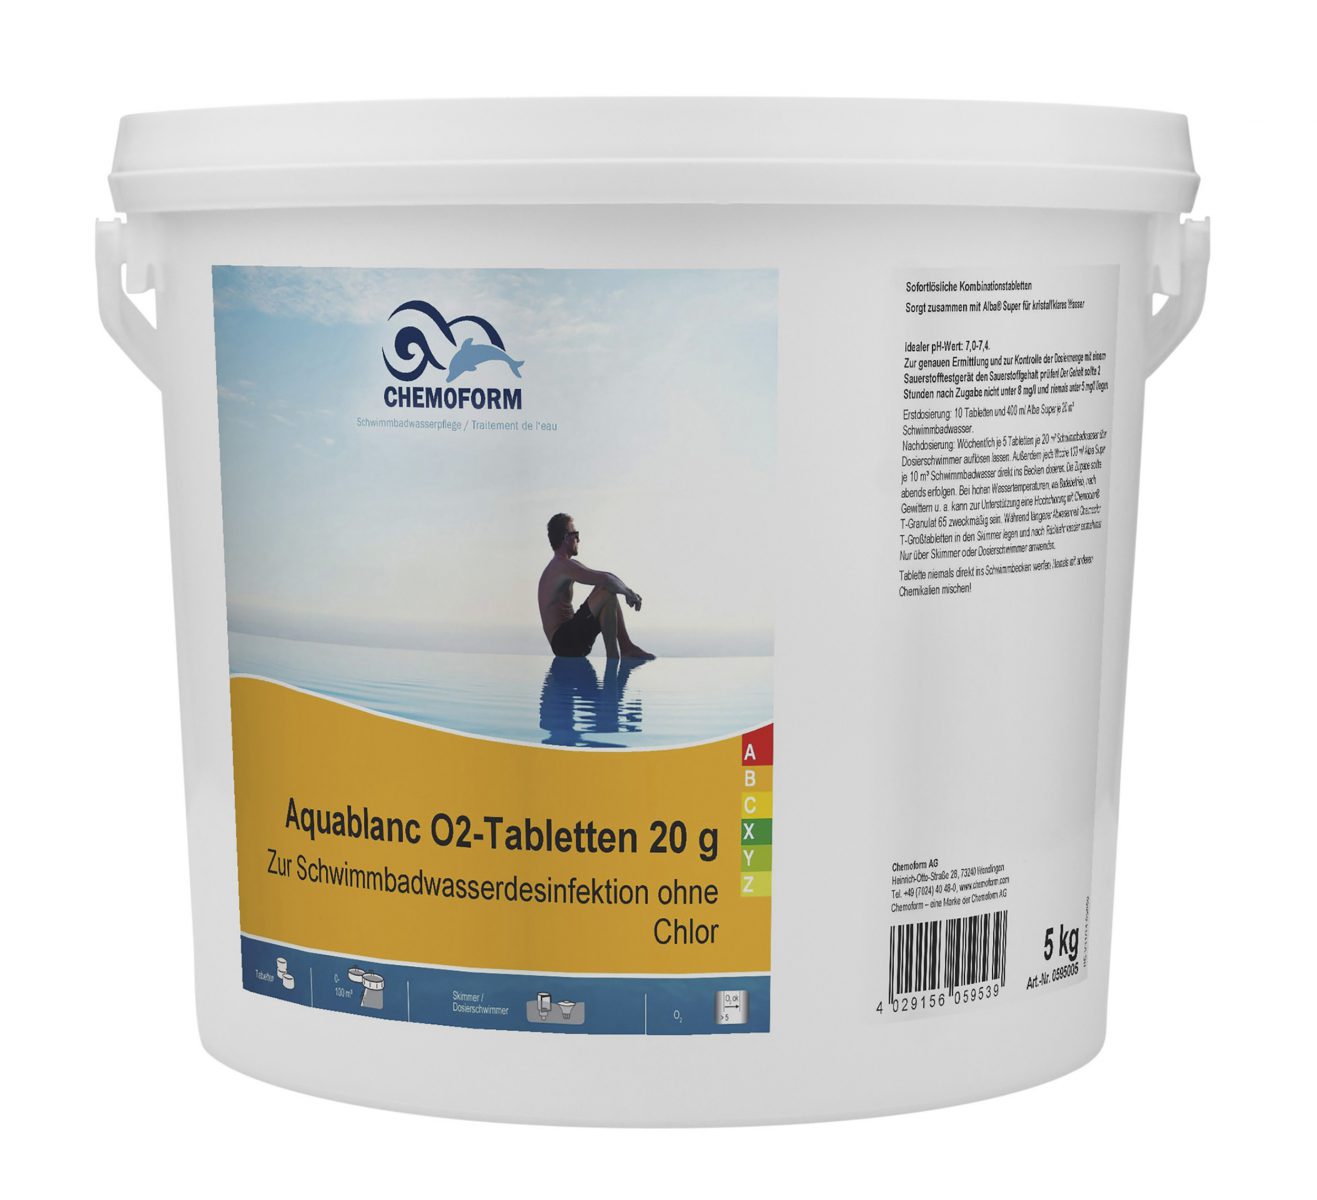 Активный кислород в таблетках для дезинфекции воды в бассейнах Аквабланк О2 (20 г), 5 кг